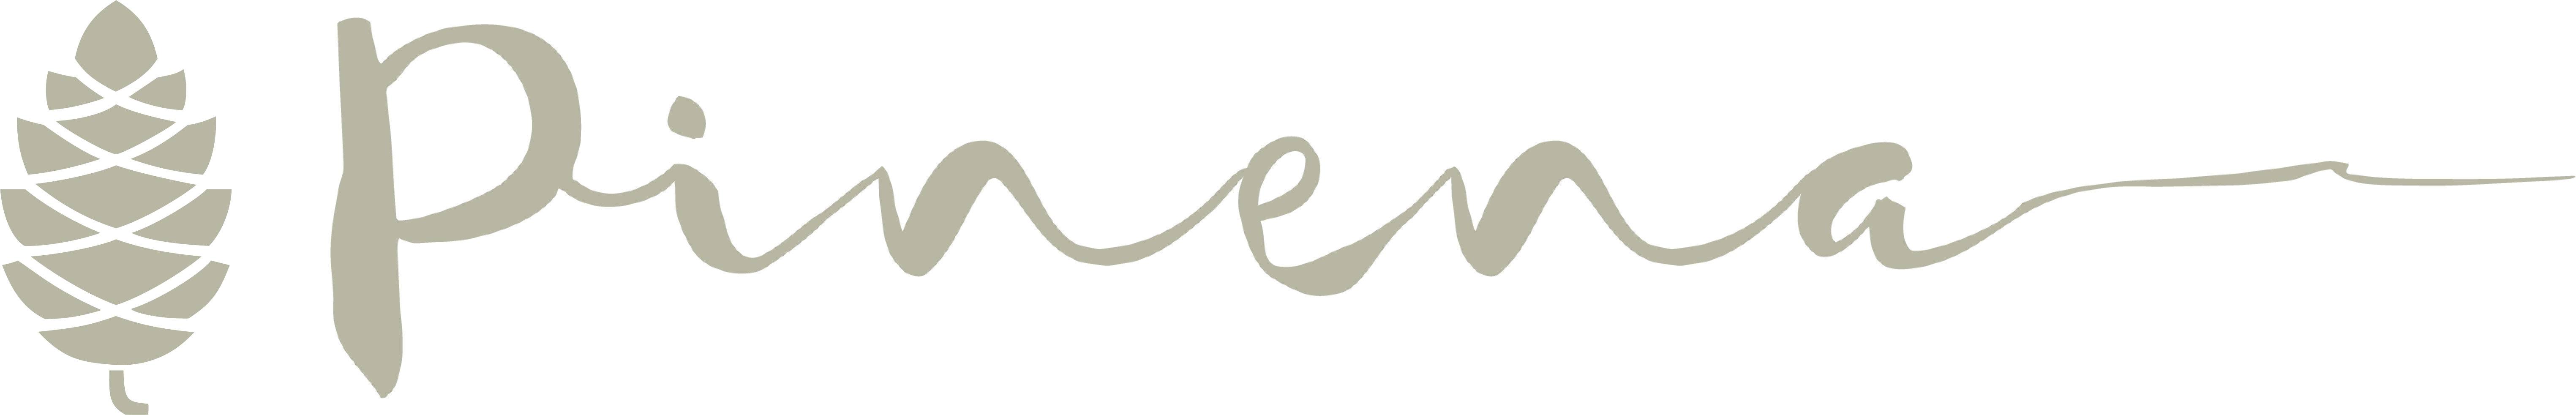 Pinena logo ja tunnus